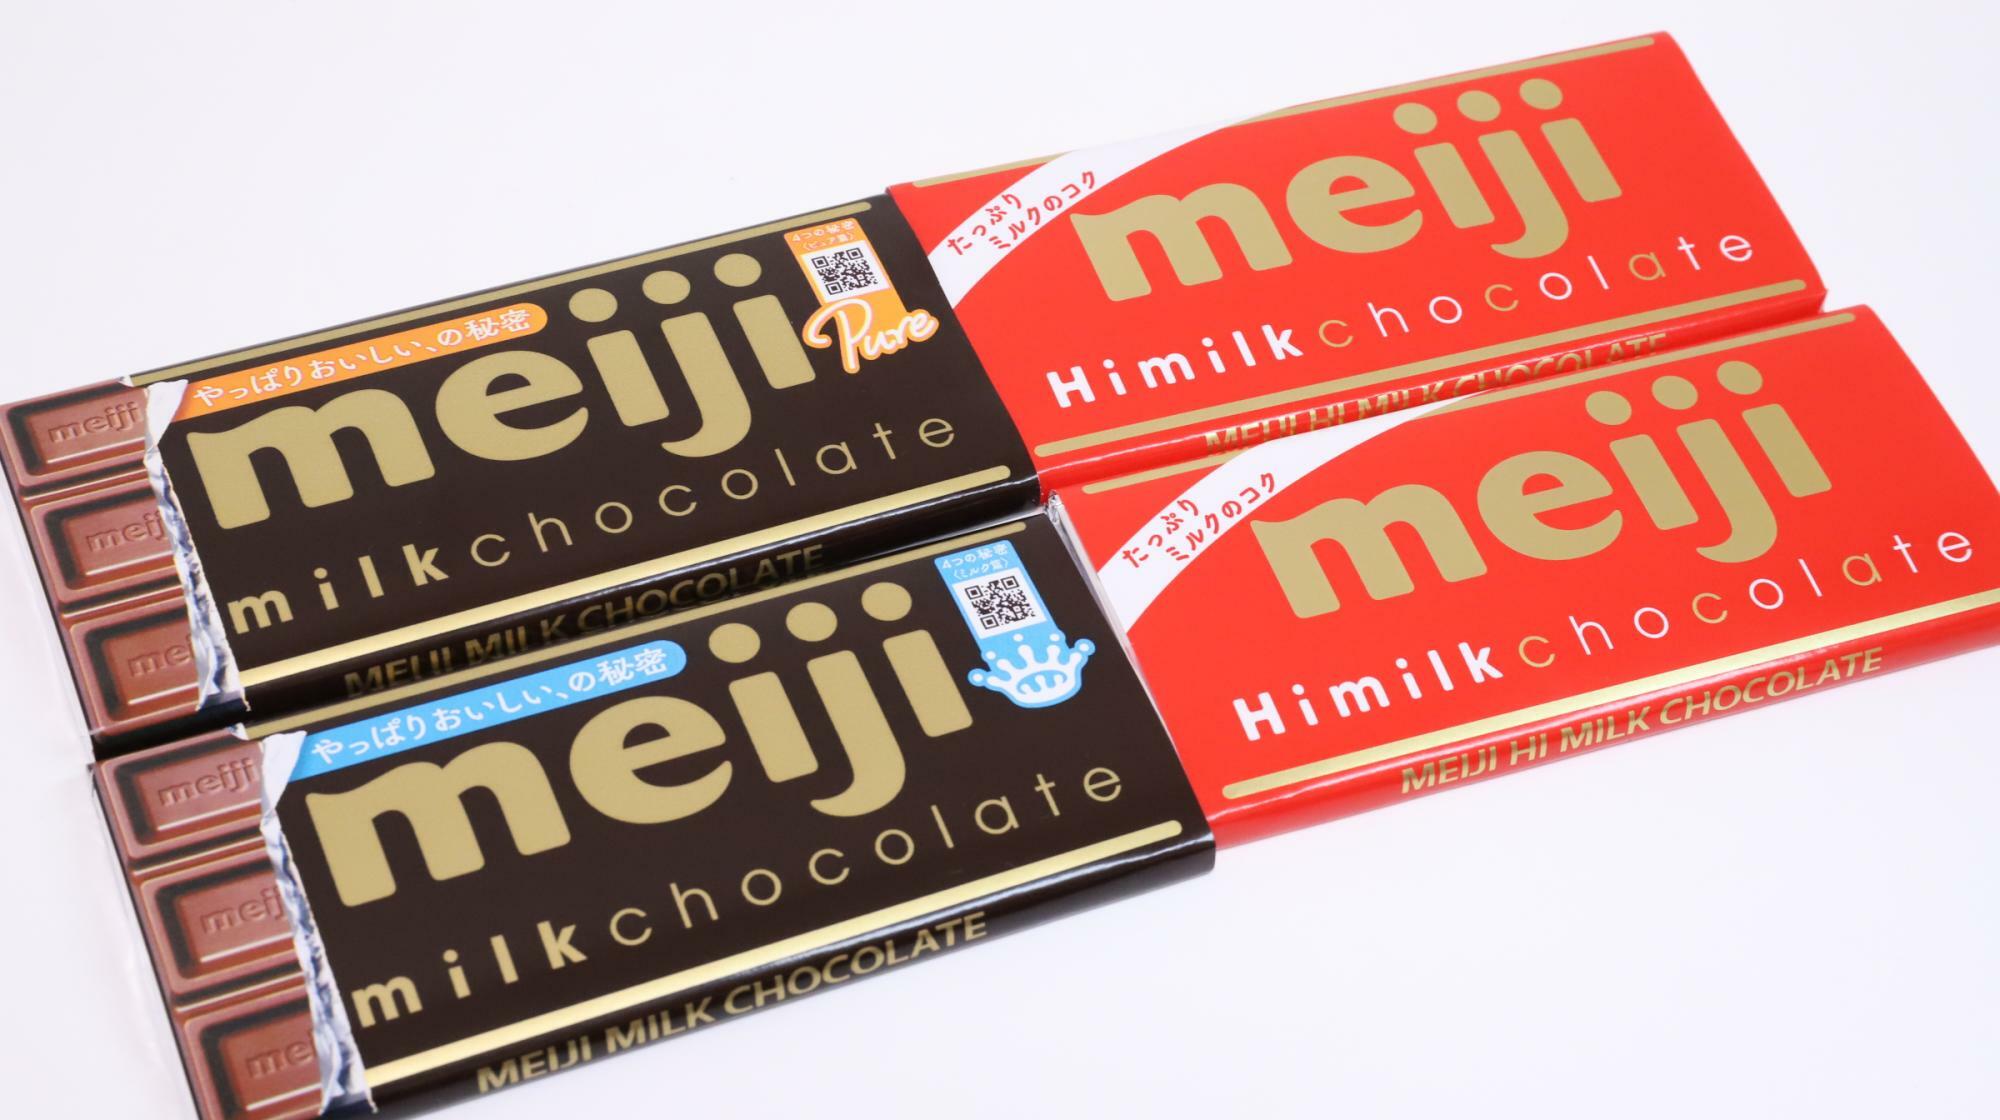 おぱんちゅうさぎのチョコ型が貰えるキャンペーンで購入した明治ミルクチョコレートとハイミルクチョコレート